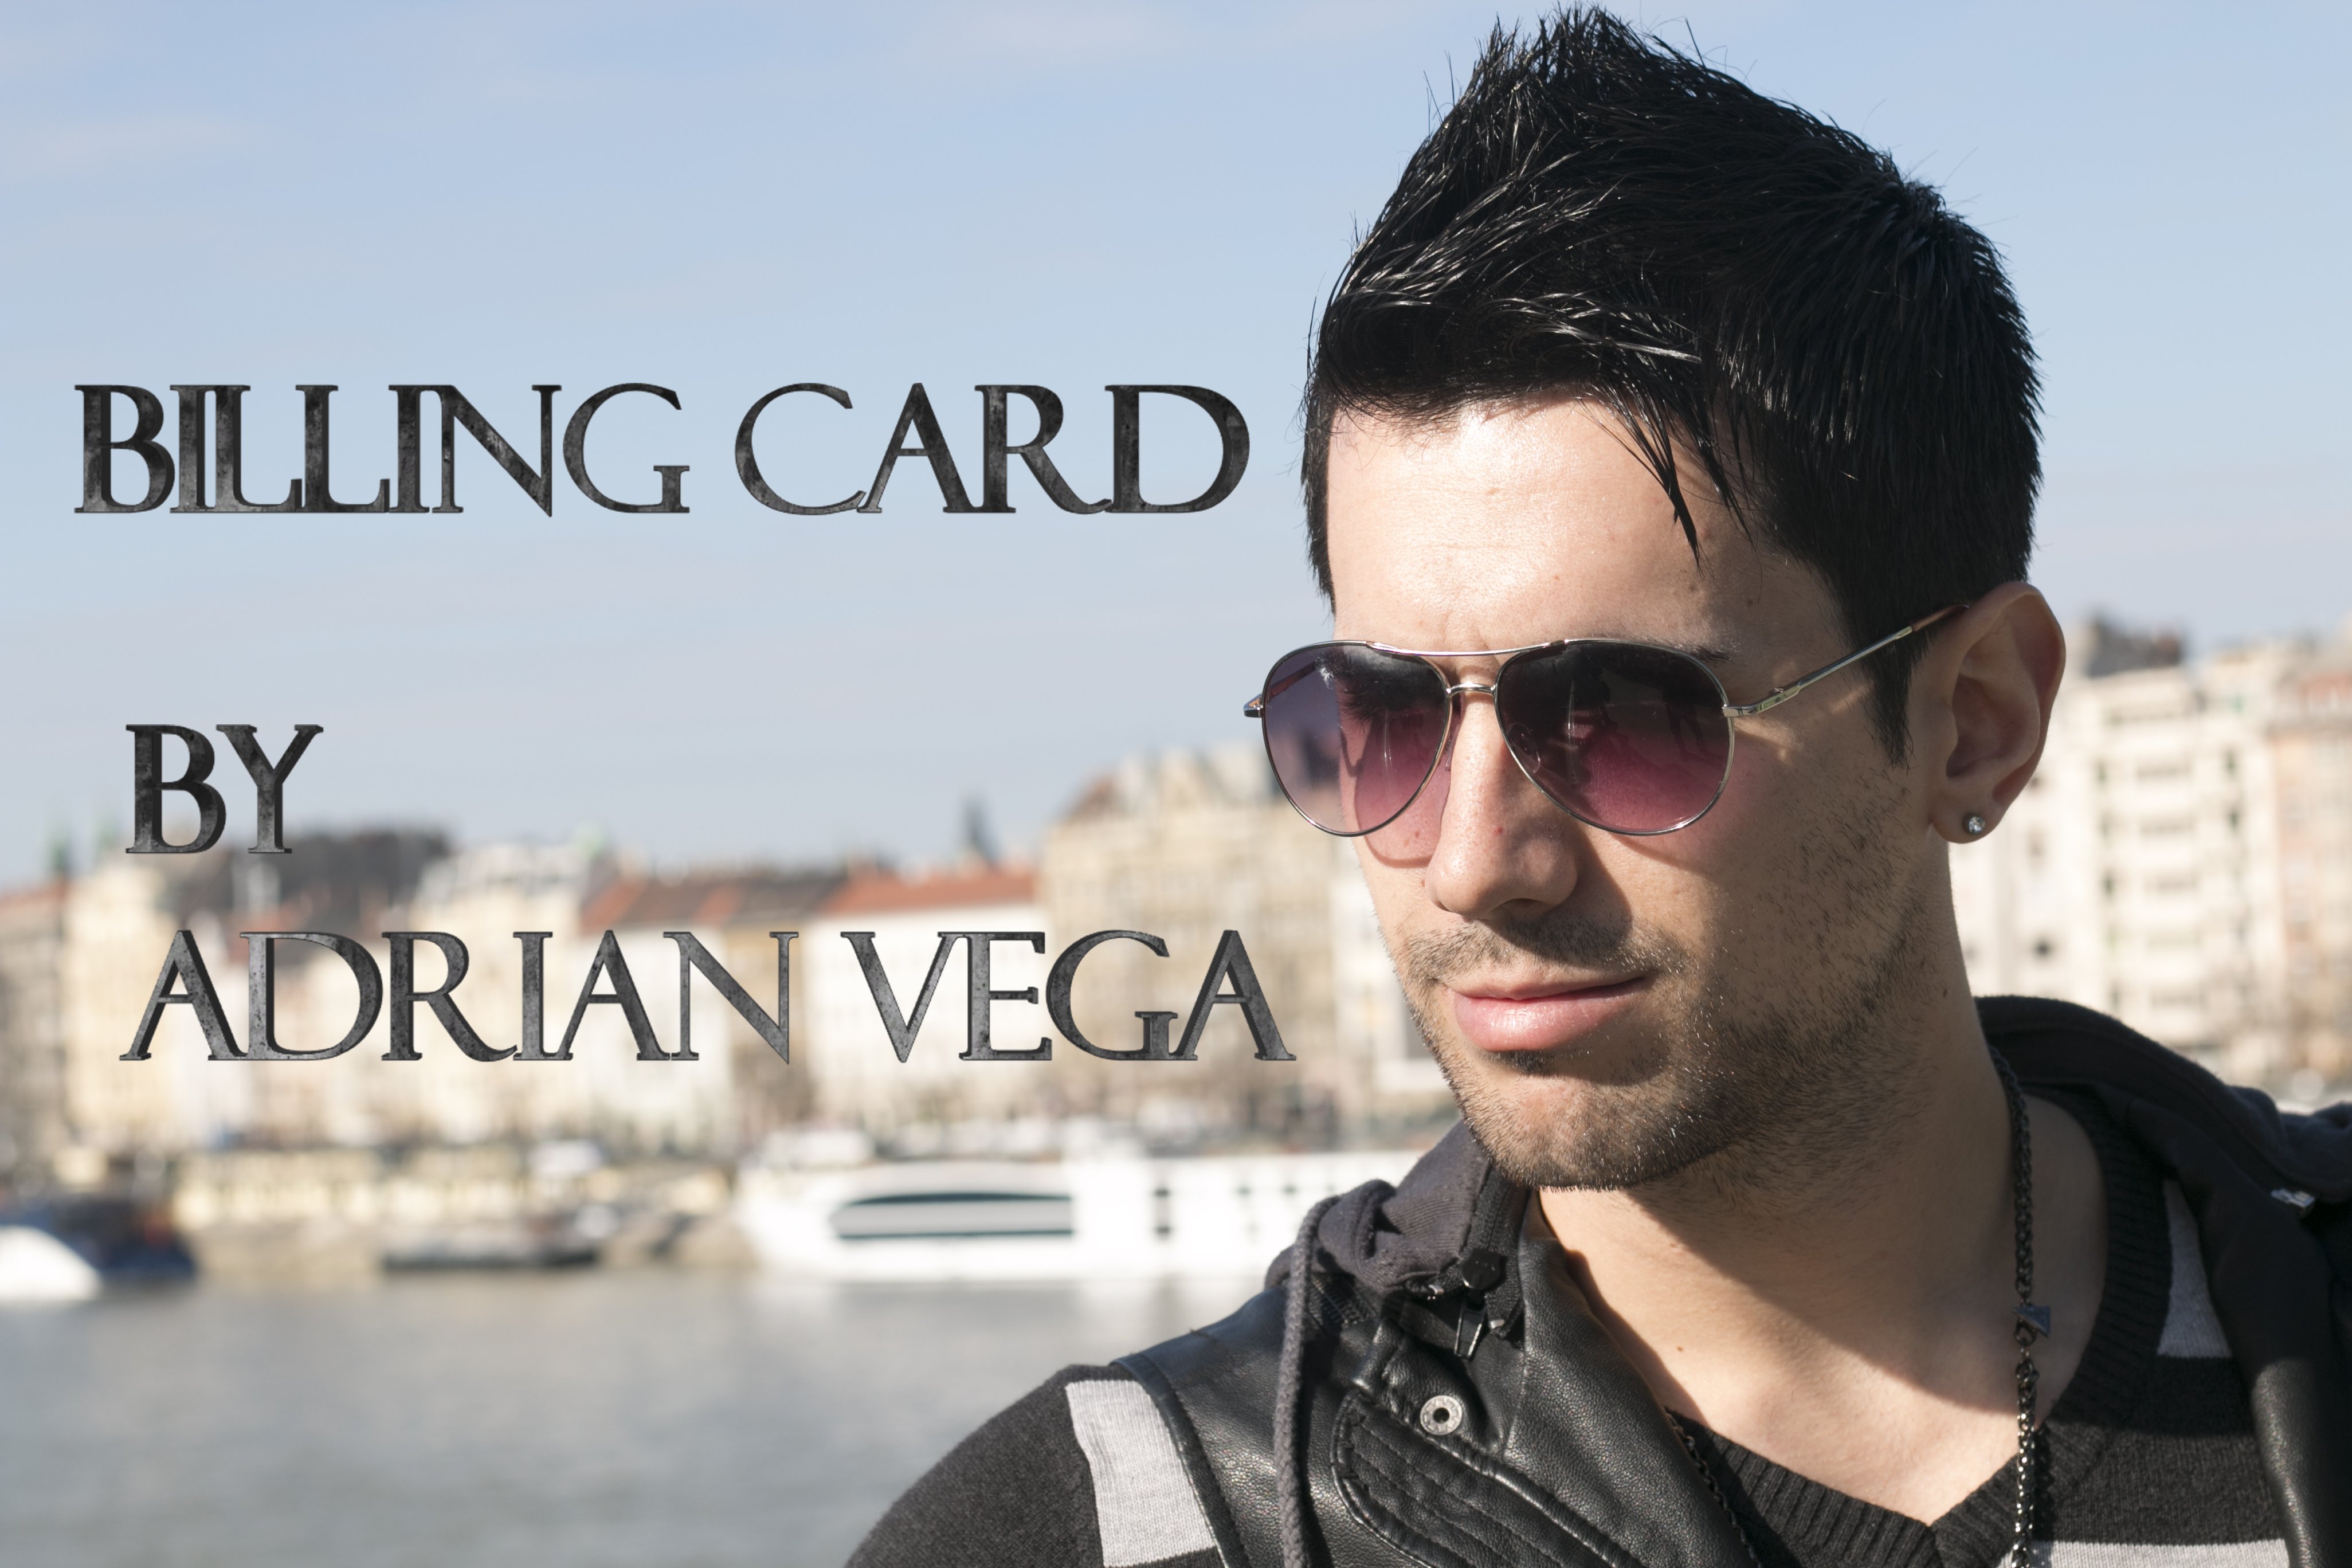 Adrian Vega - Billing Card